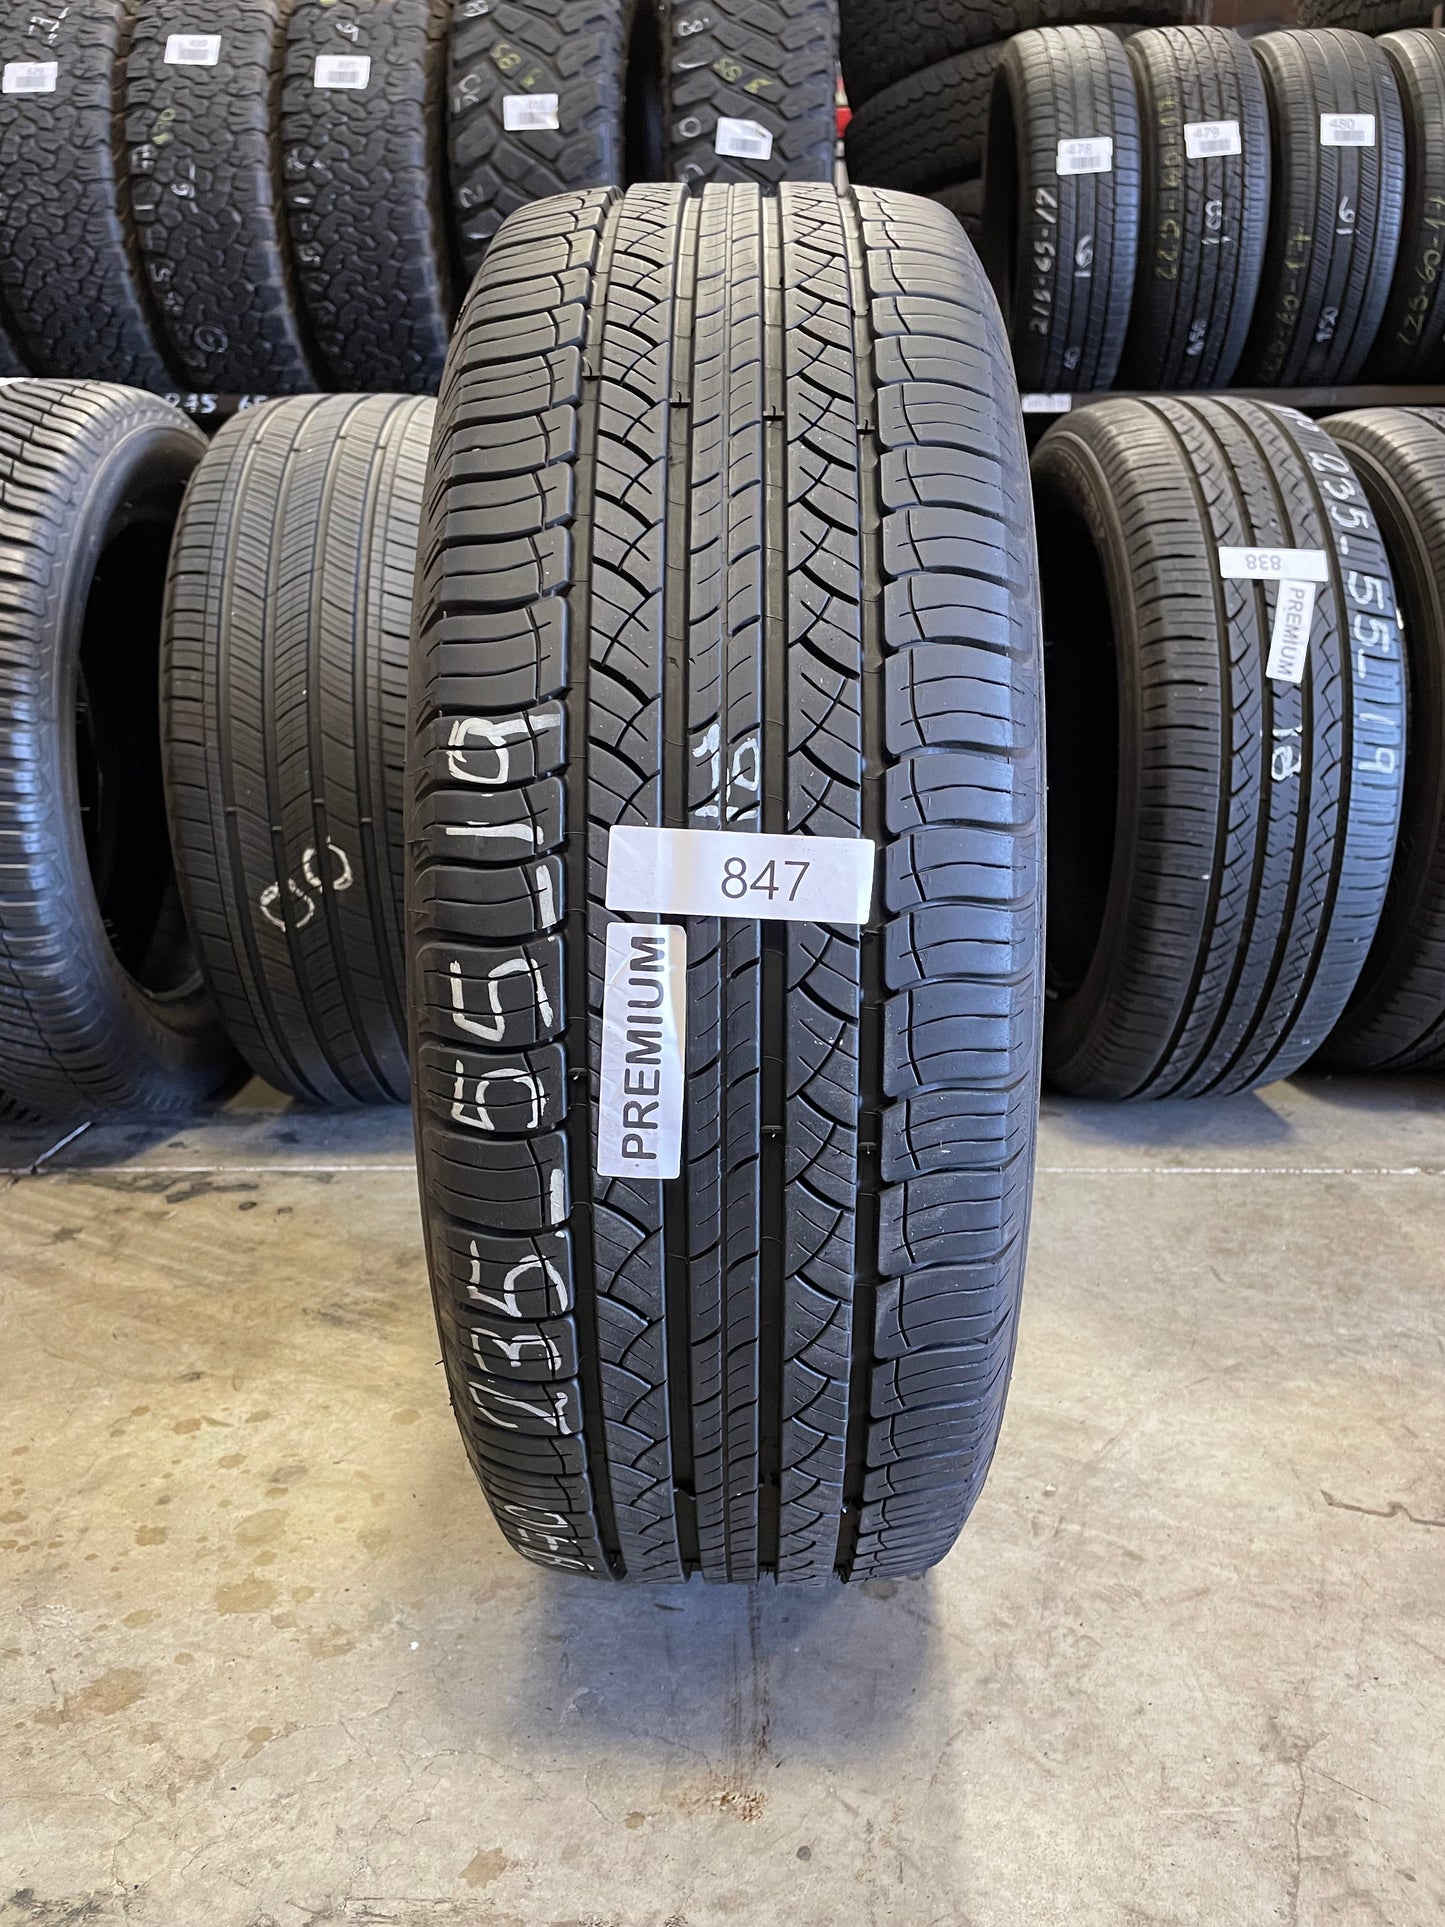 SINGLE 235/55R19 Michelin Latitude 101 V SL - Premium Used Tires